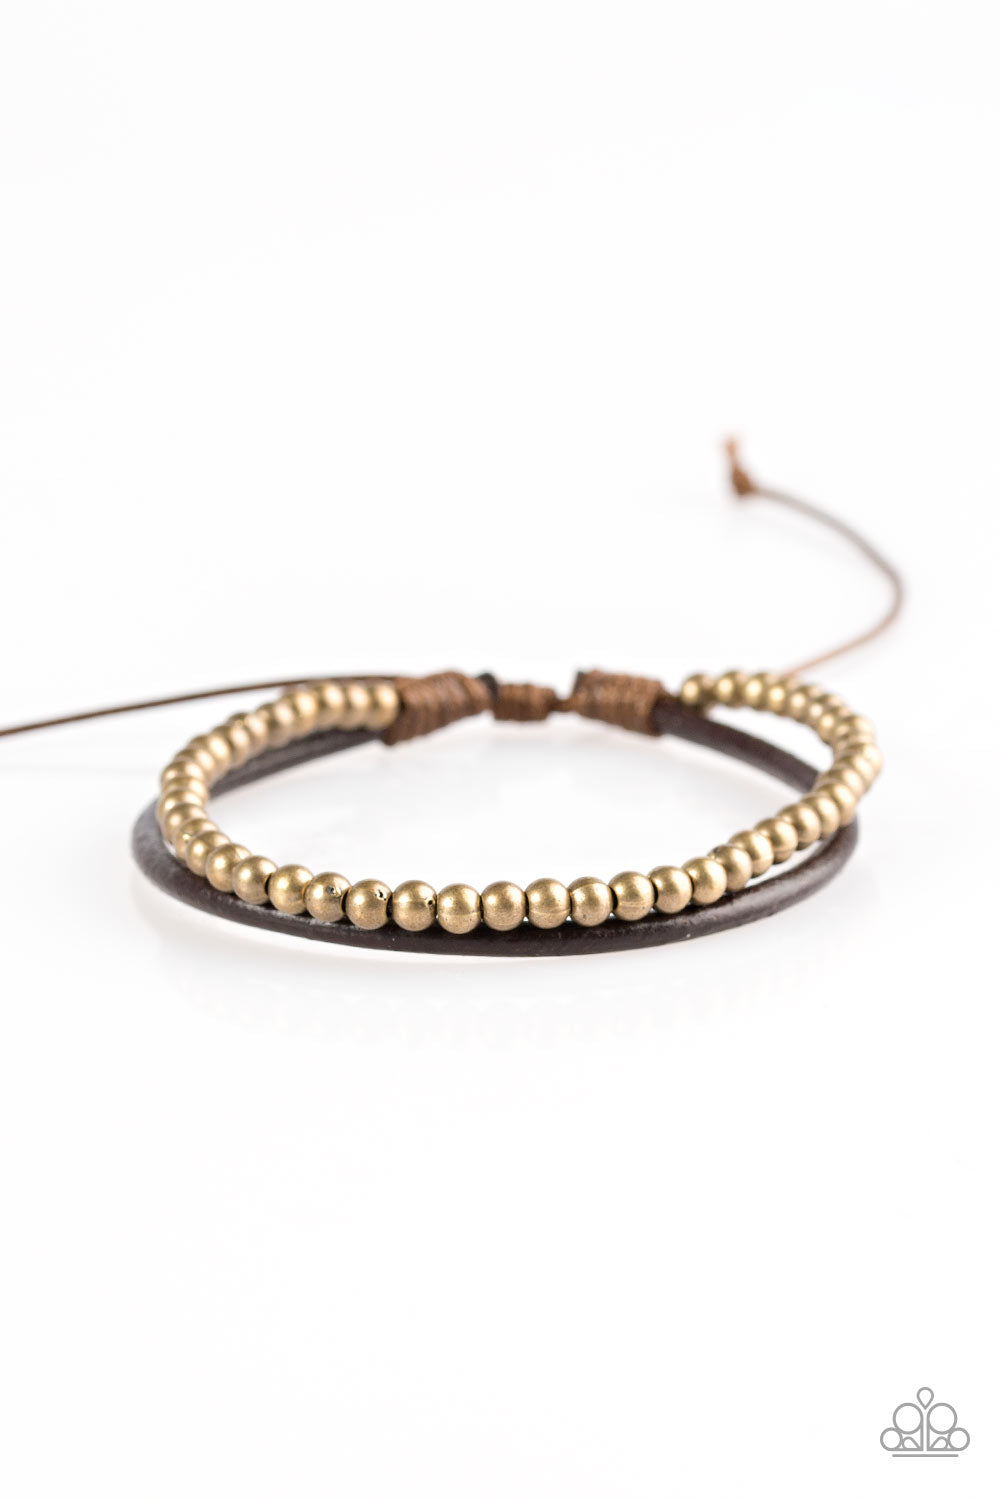 Paparazzi Mountain Mod - Brass Beads - Brown Leather - Sliding Knot Bracelet - $5 Jewelry With Ashley Swint